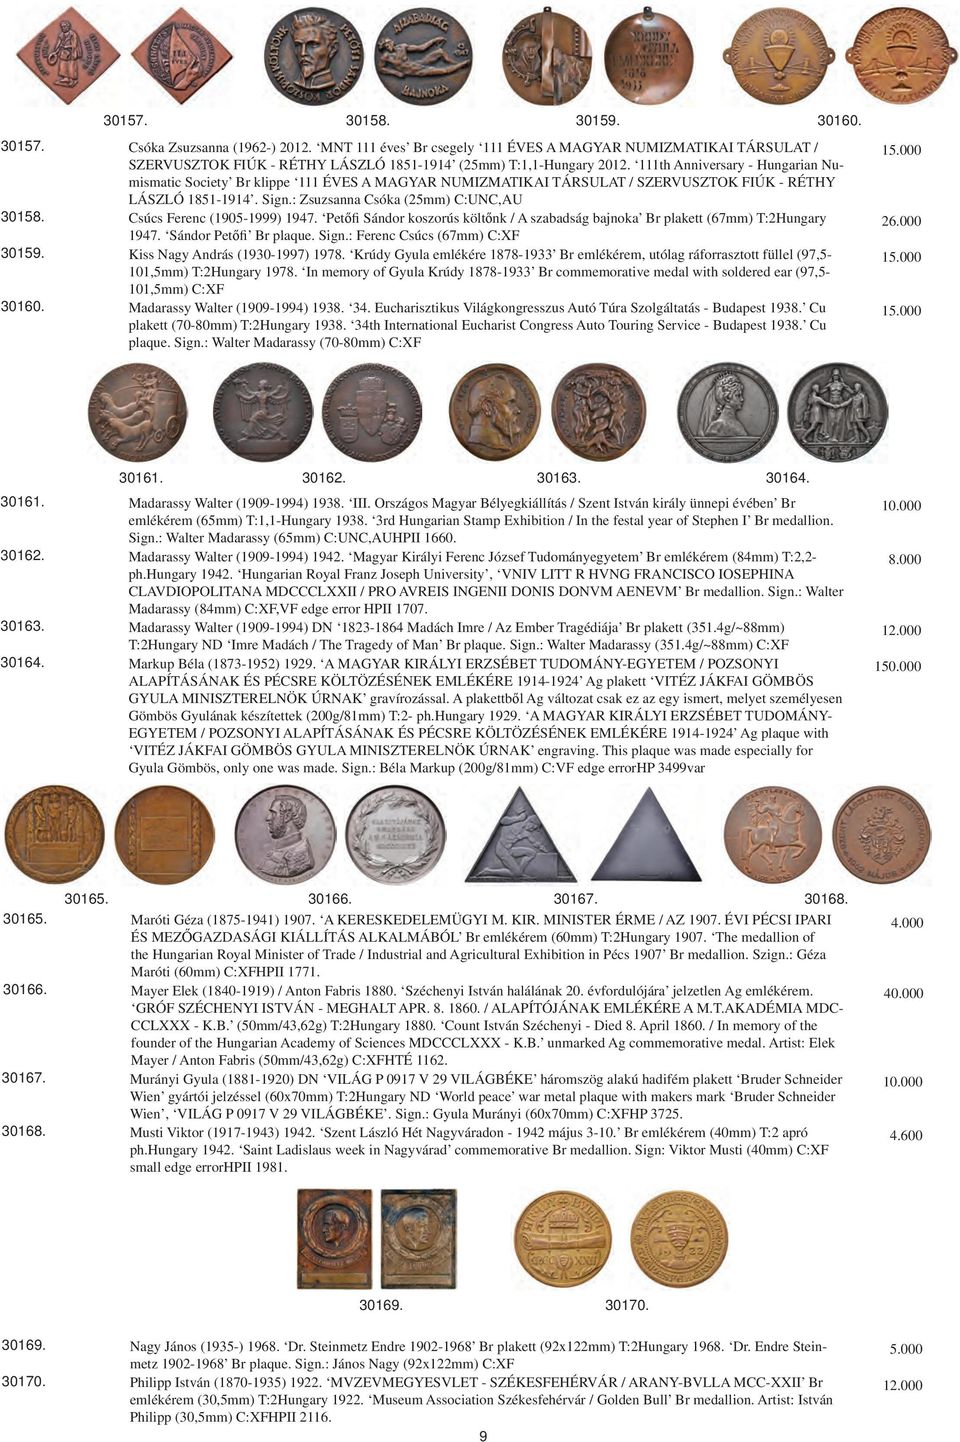 111th Anniversary - Hungarian Numismatic Society Br klippe 111 ÉVES A MAGYAR NUMIZMATIKAI TÁRSULAT / SZERVUSZTOK FIÚK - RÉTHY LÁSZLÓ 1851-1914. Sign.